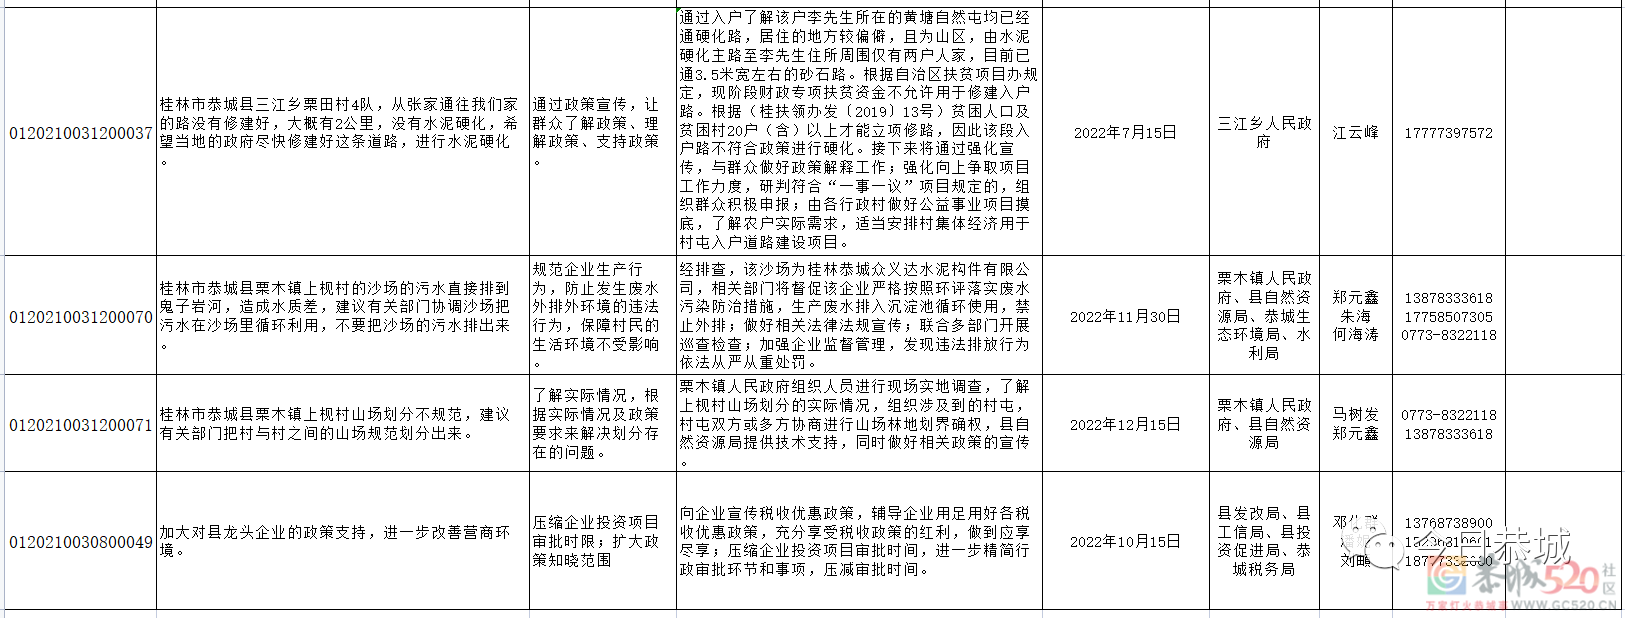 恭城瑶族自治县2022年度自治区反馈群众意见建议整改公示689 / 作者:论坛小编01 / 帖子ID:296125